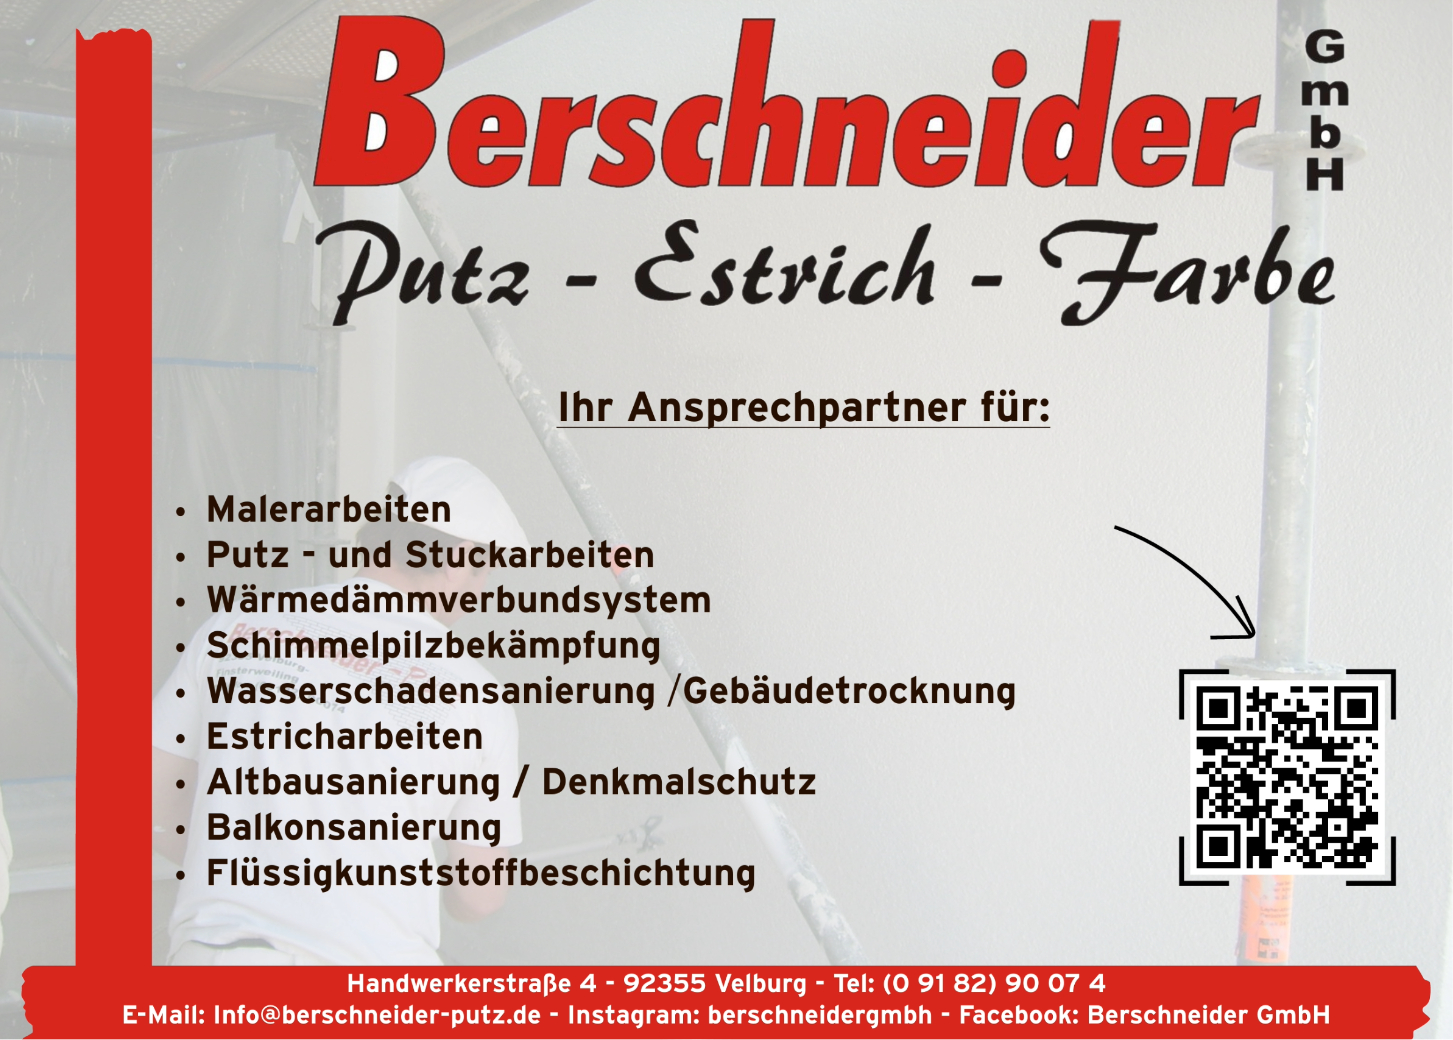 (c) Berschneider-putz.de